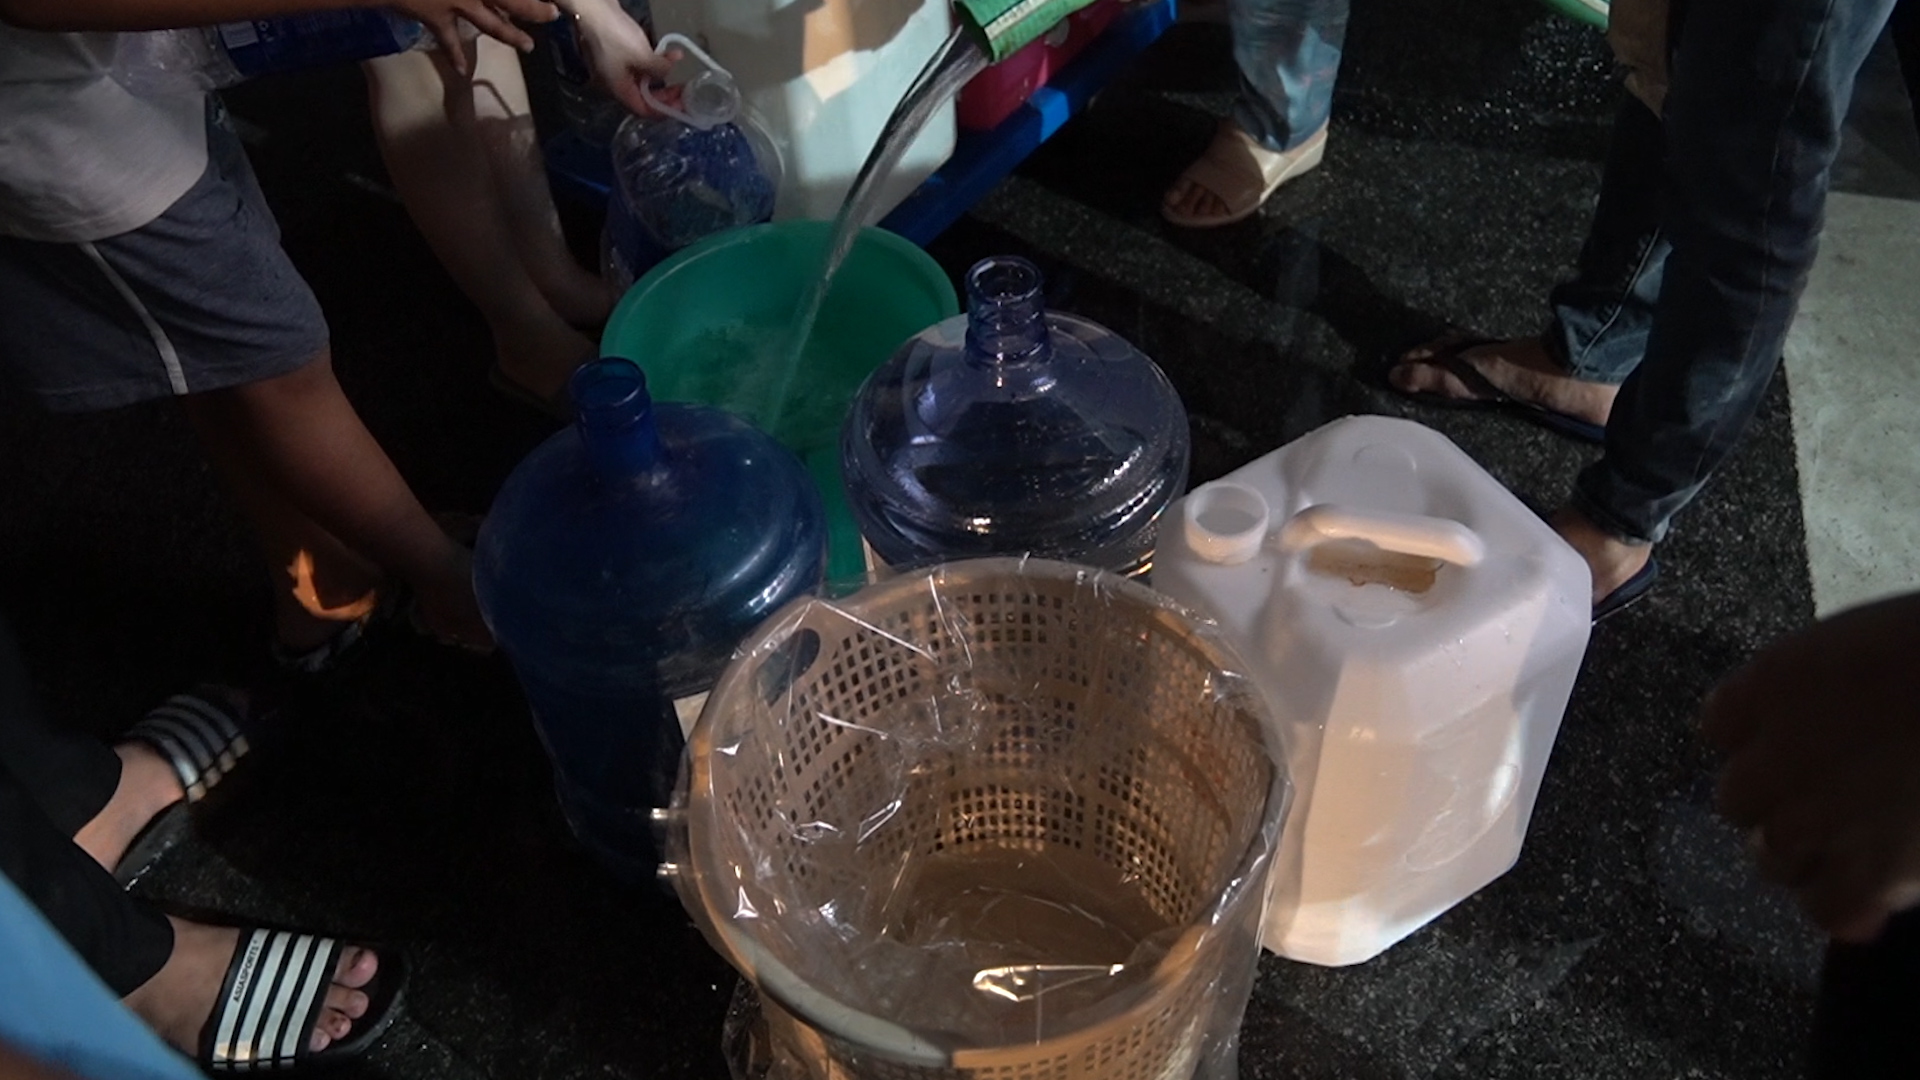 Chung cư bị cúp nước: Người dân bọc nilon sọt nhựa để hứng nước 'tiếp tế' - Ảnh 1.